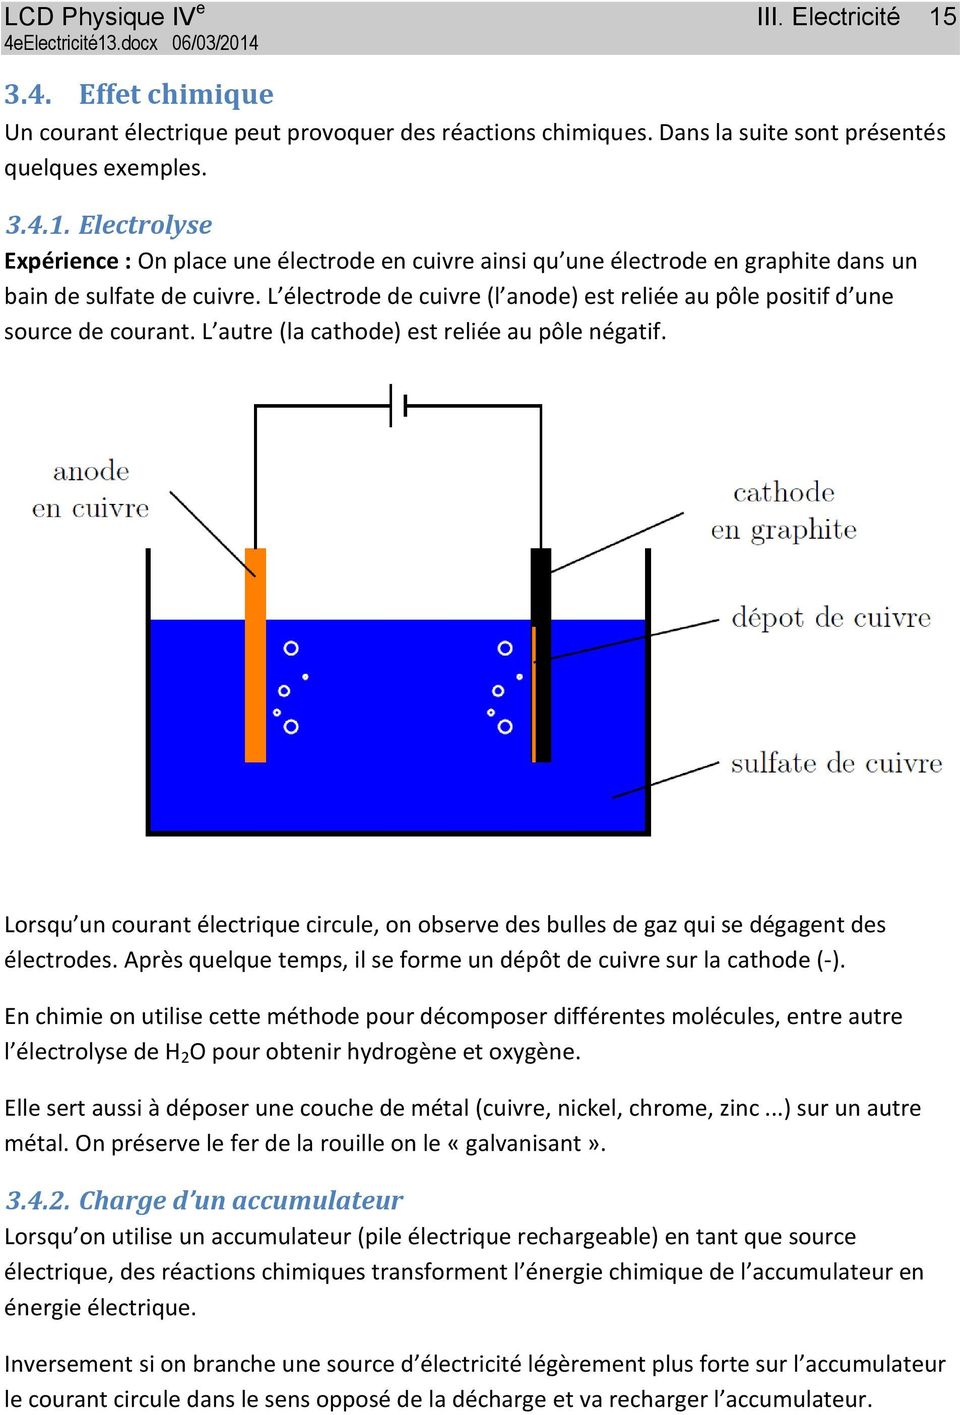 Lorsqu un courant électrique circule, on observe des bulles de gaz qui se dégagent des électrodes. Après quelque temps, il se forme un dépôt de cuivre sur la cathode (-).